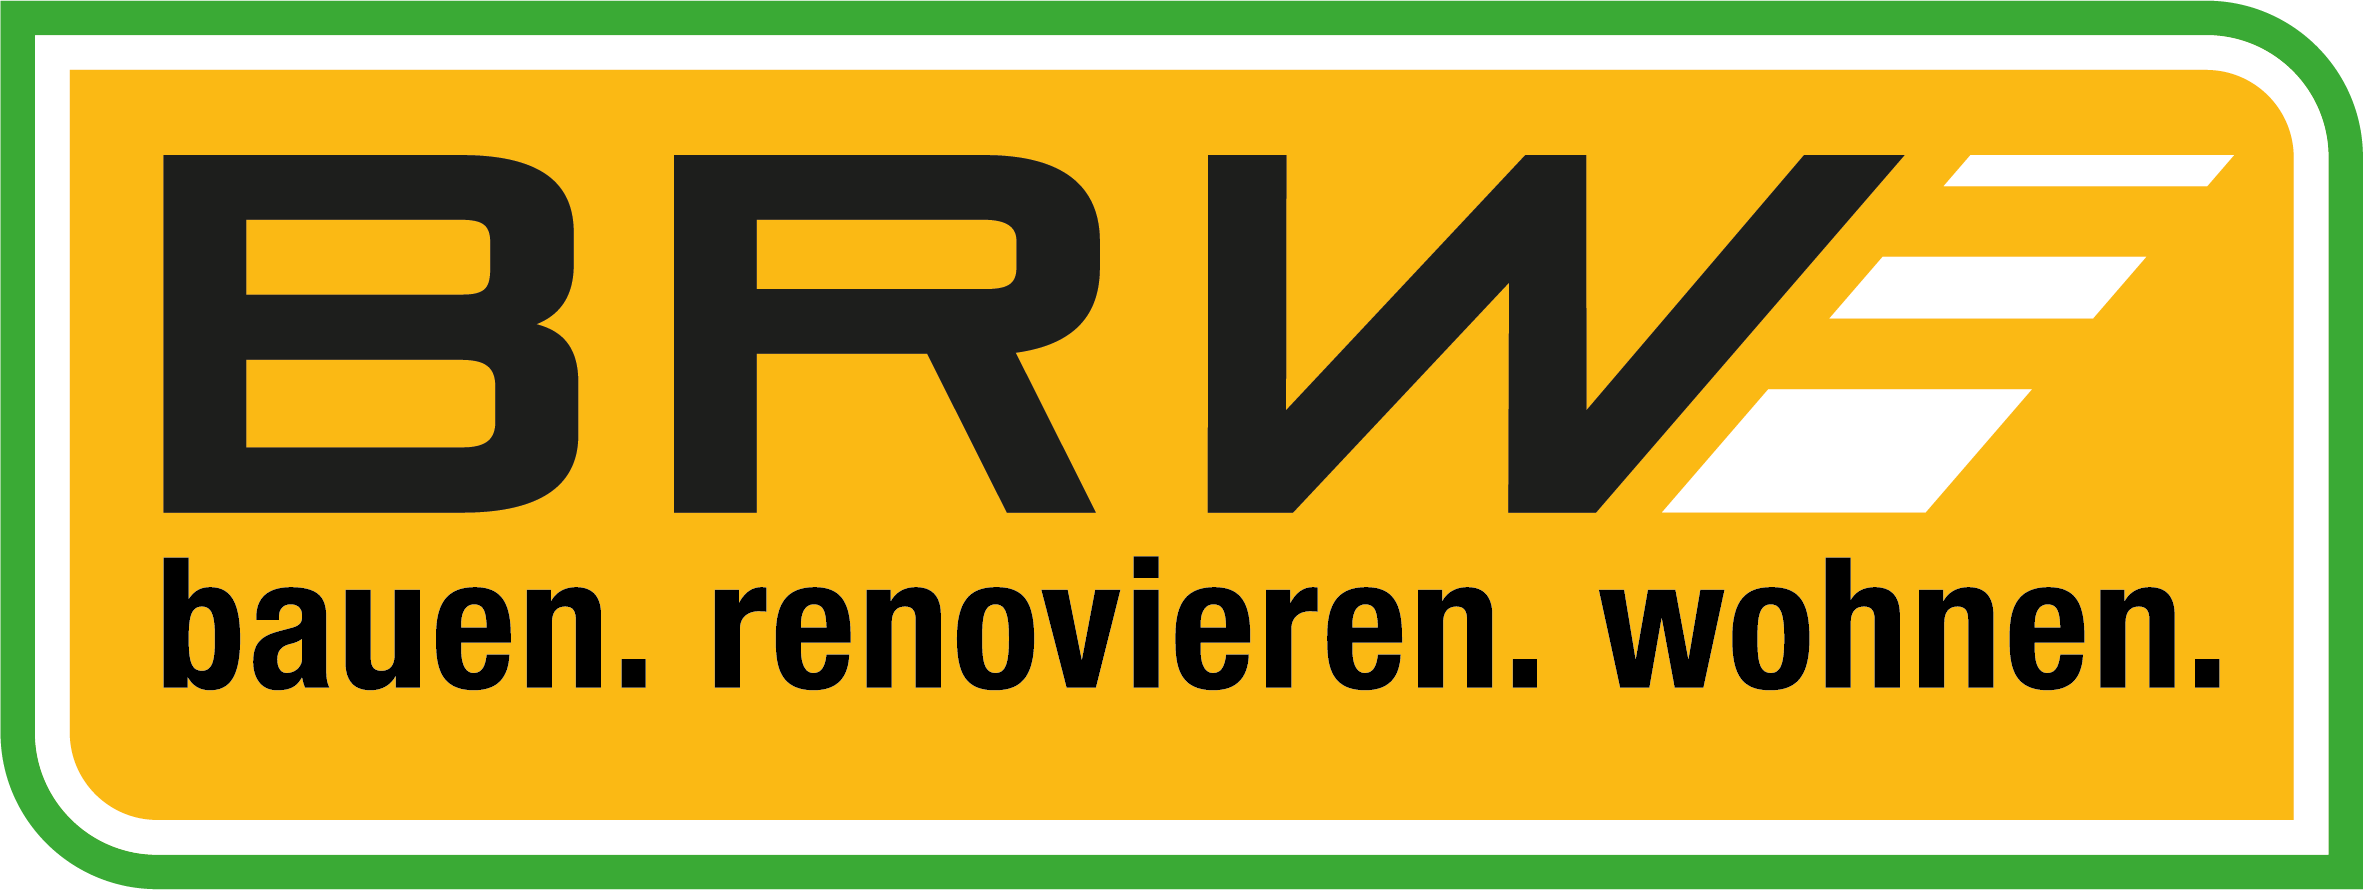 BRW Logo